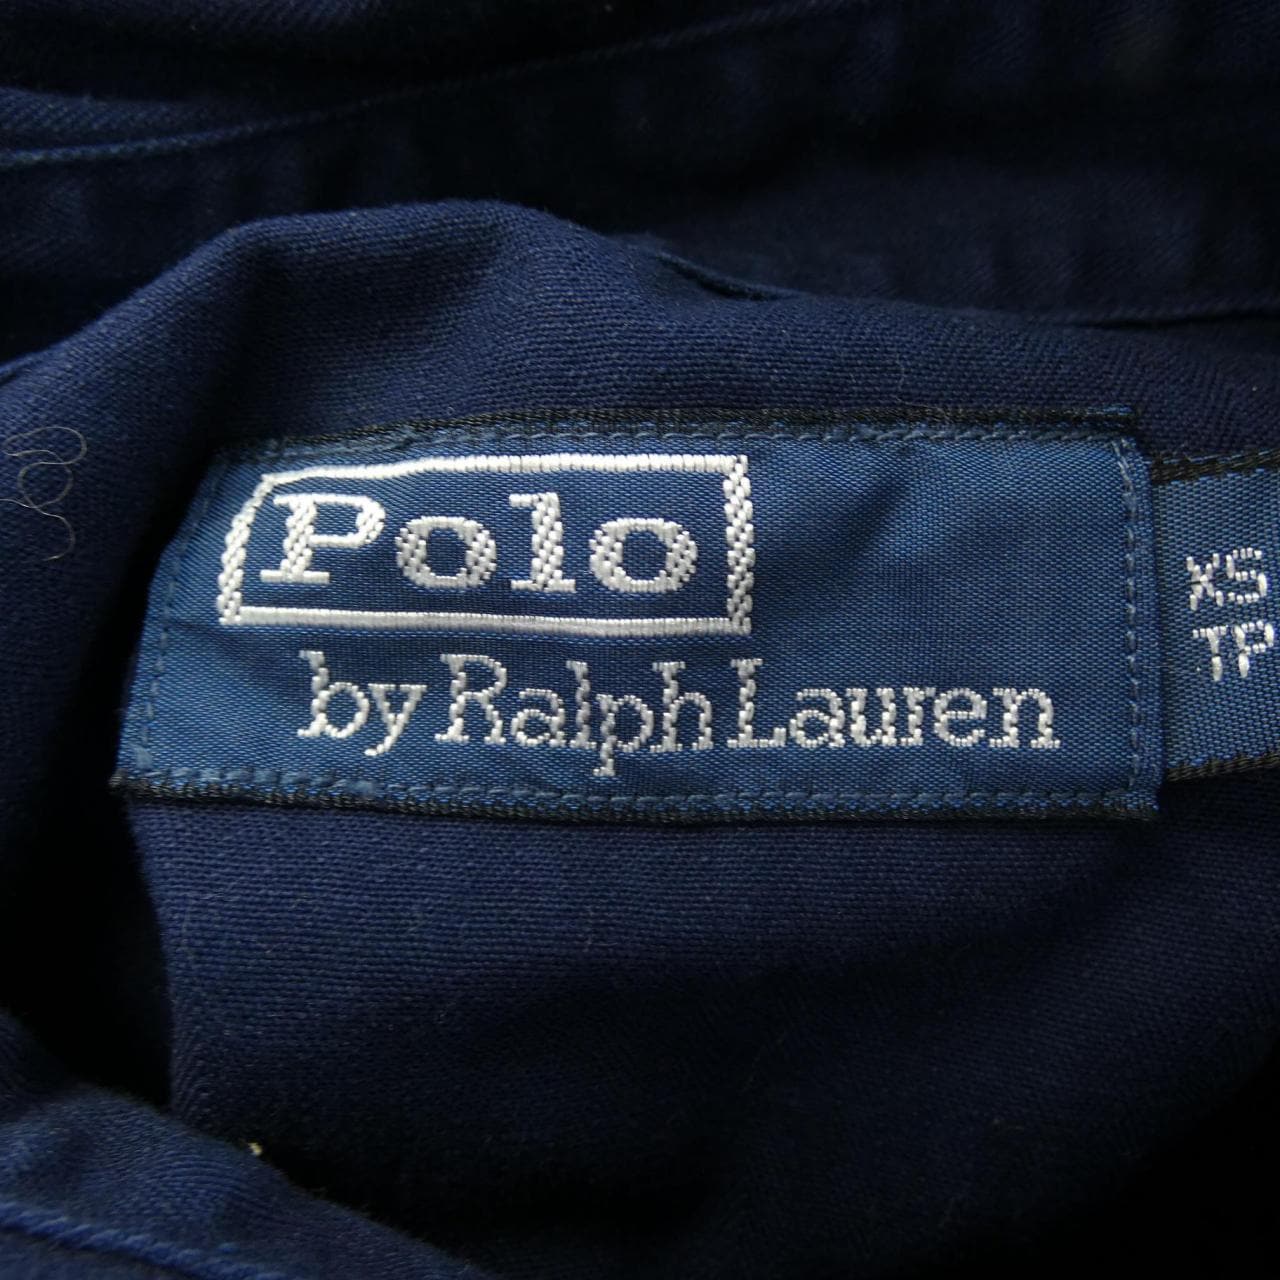 Polo Ralph Lauren shirt